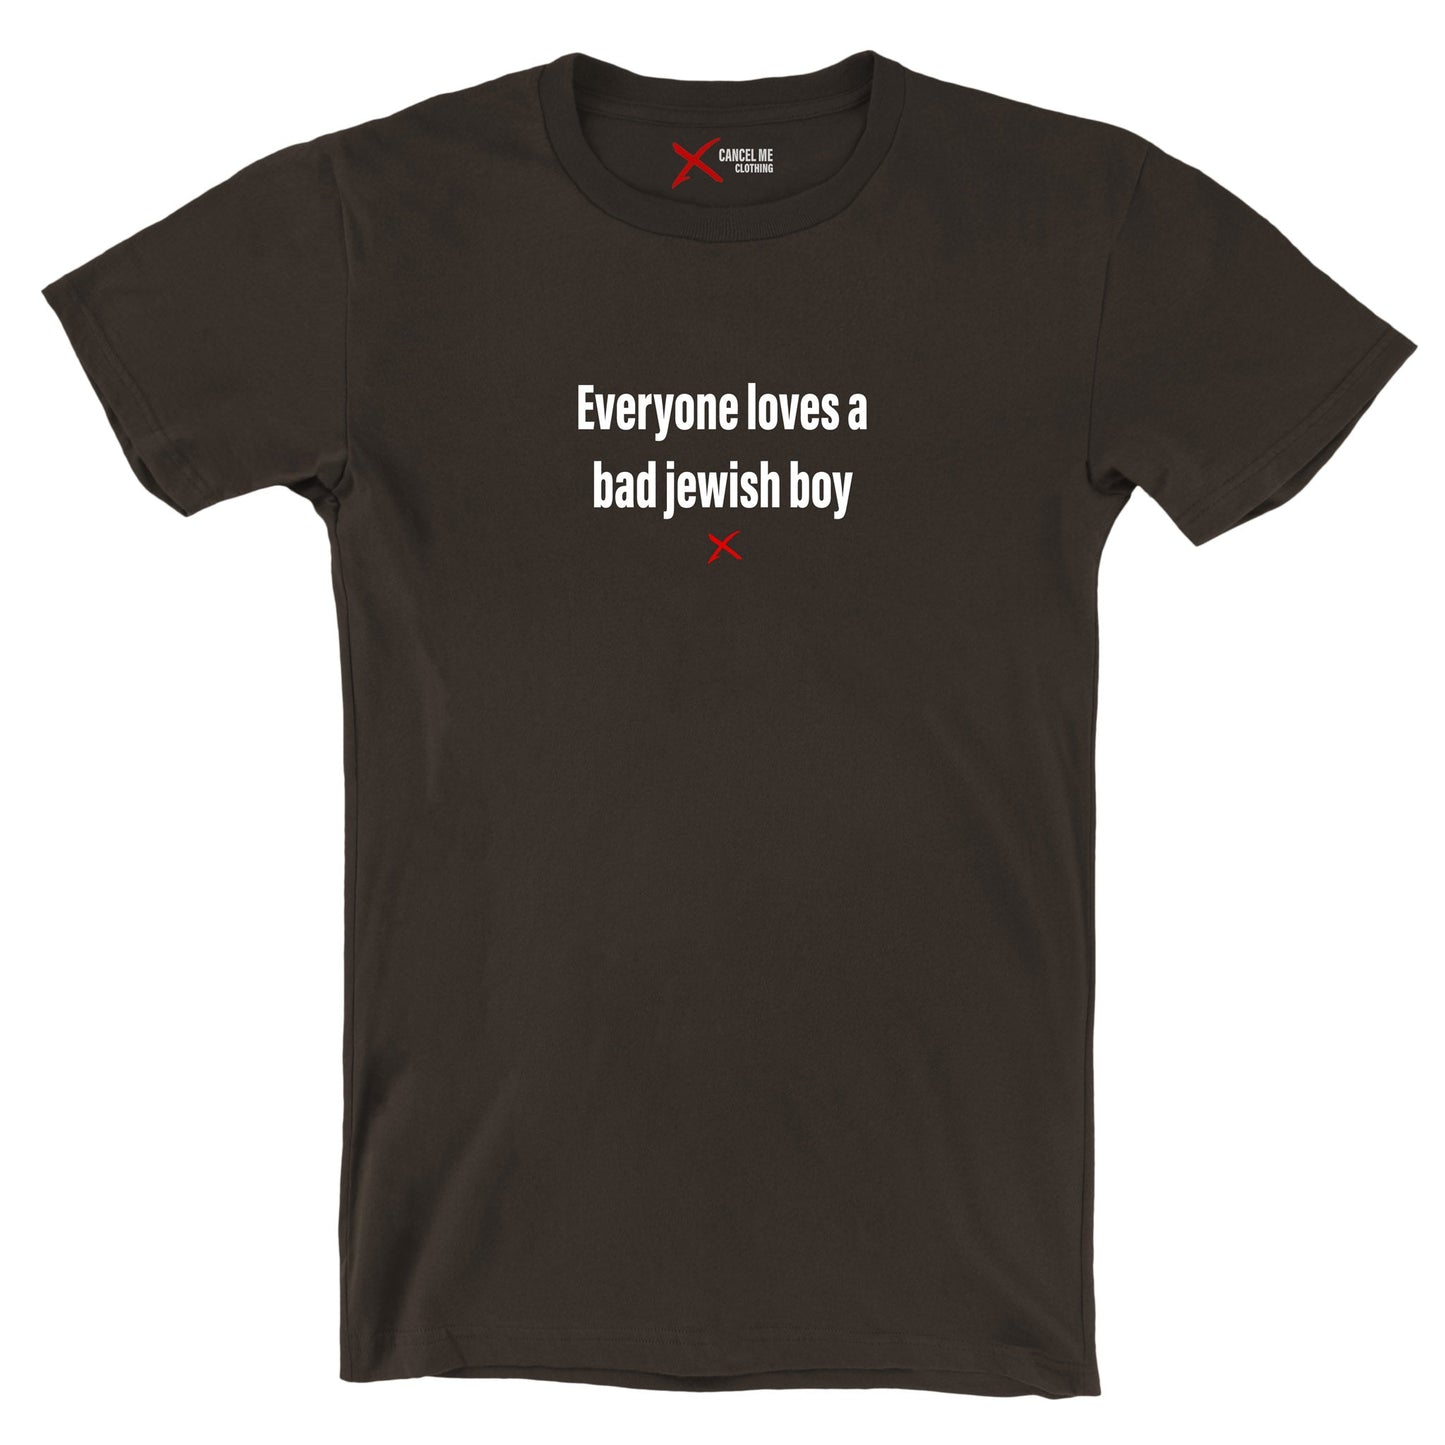 Everyone loves a bad jewish boy - Shirt